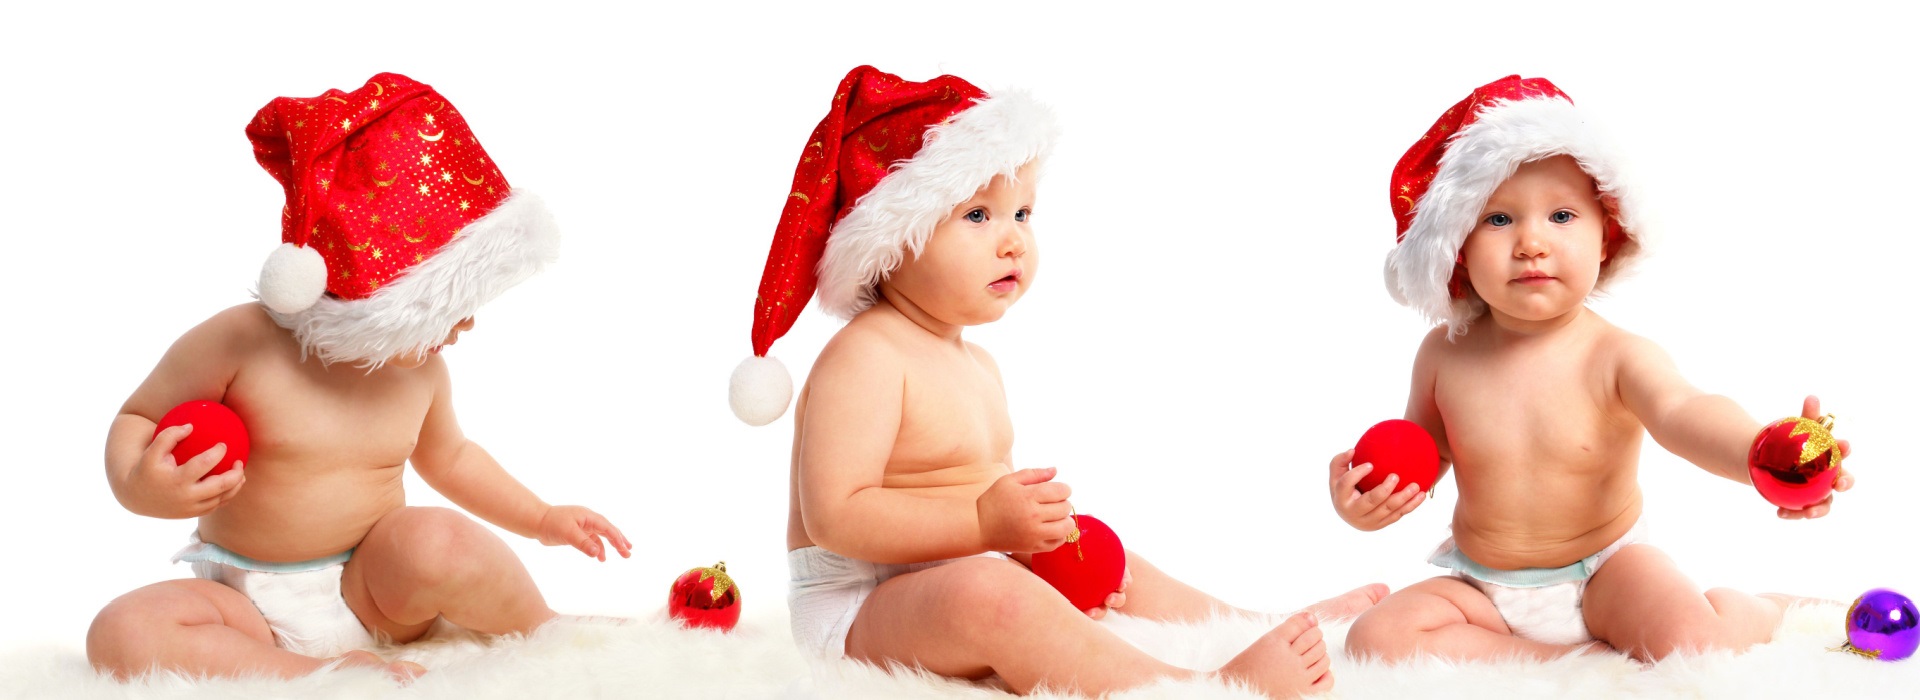 Kako odabrati najbolji poklon za bebe do godinu dana starosti?